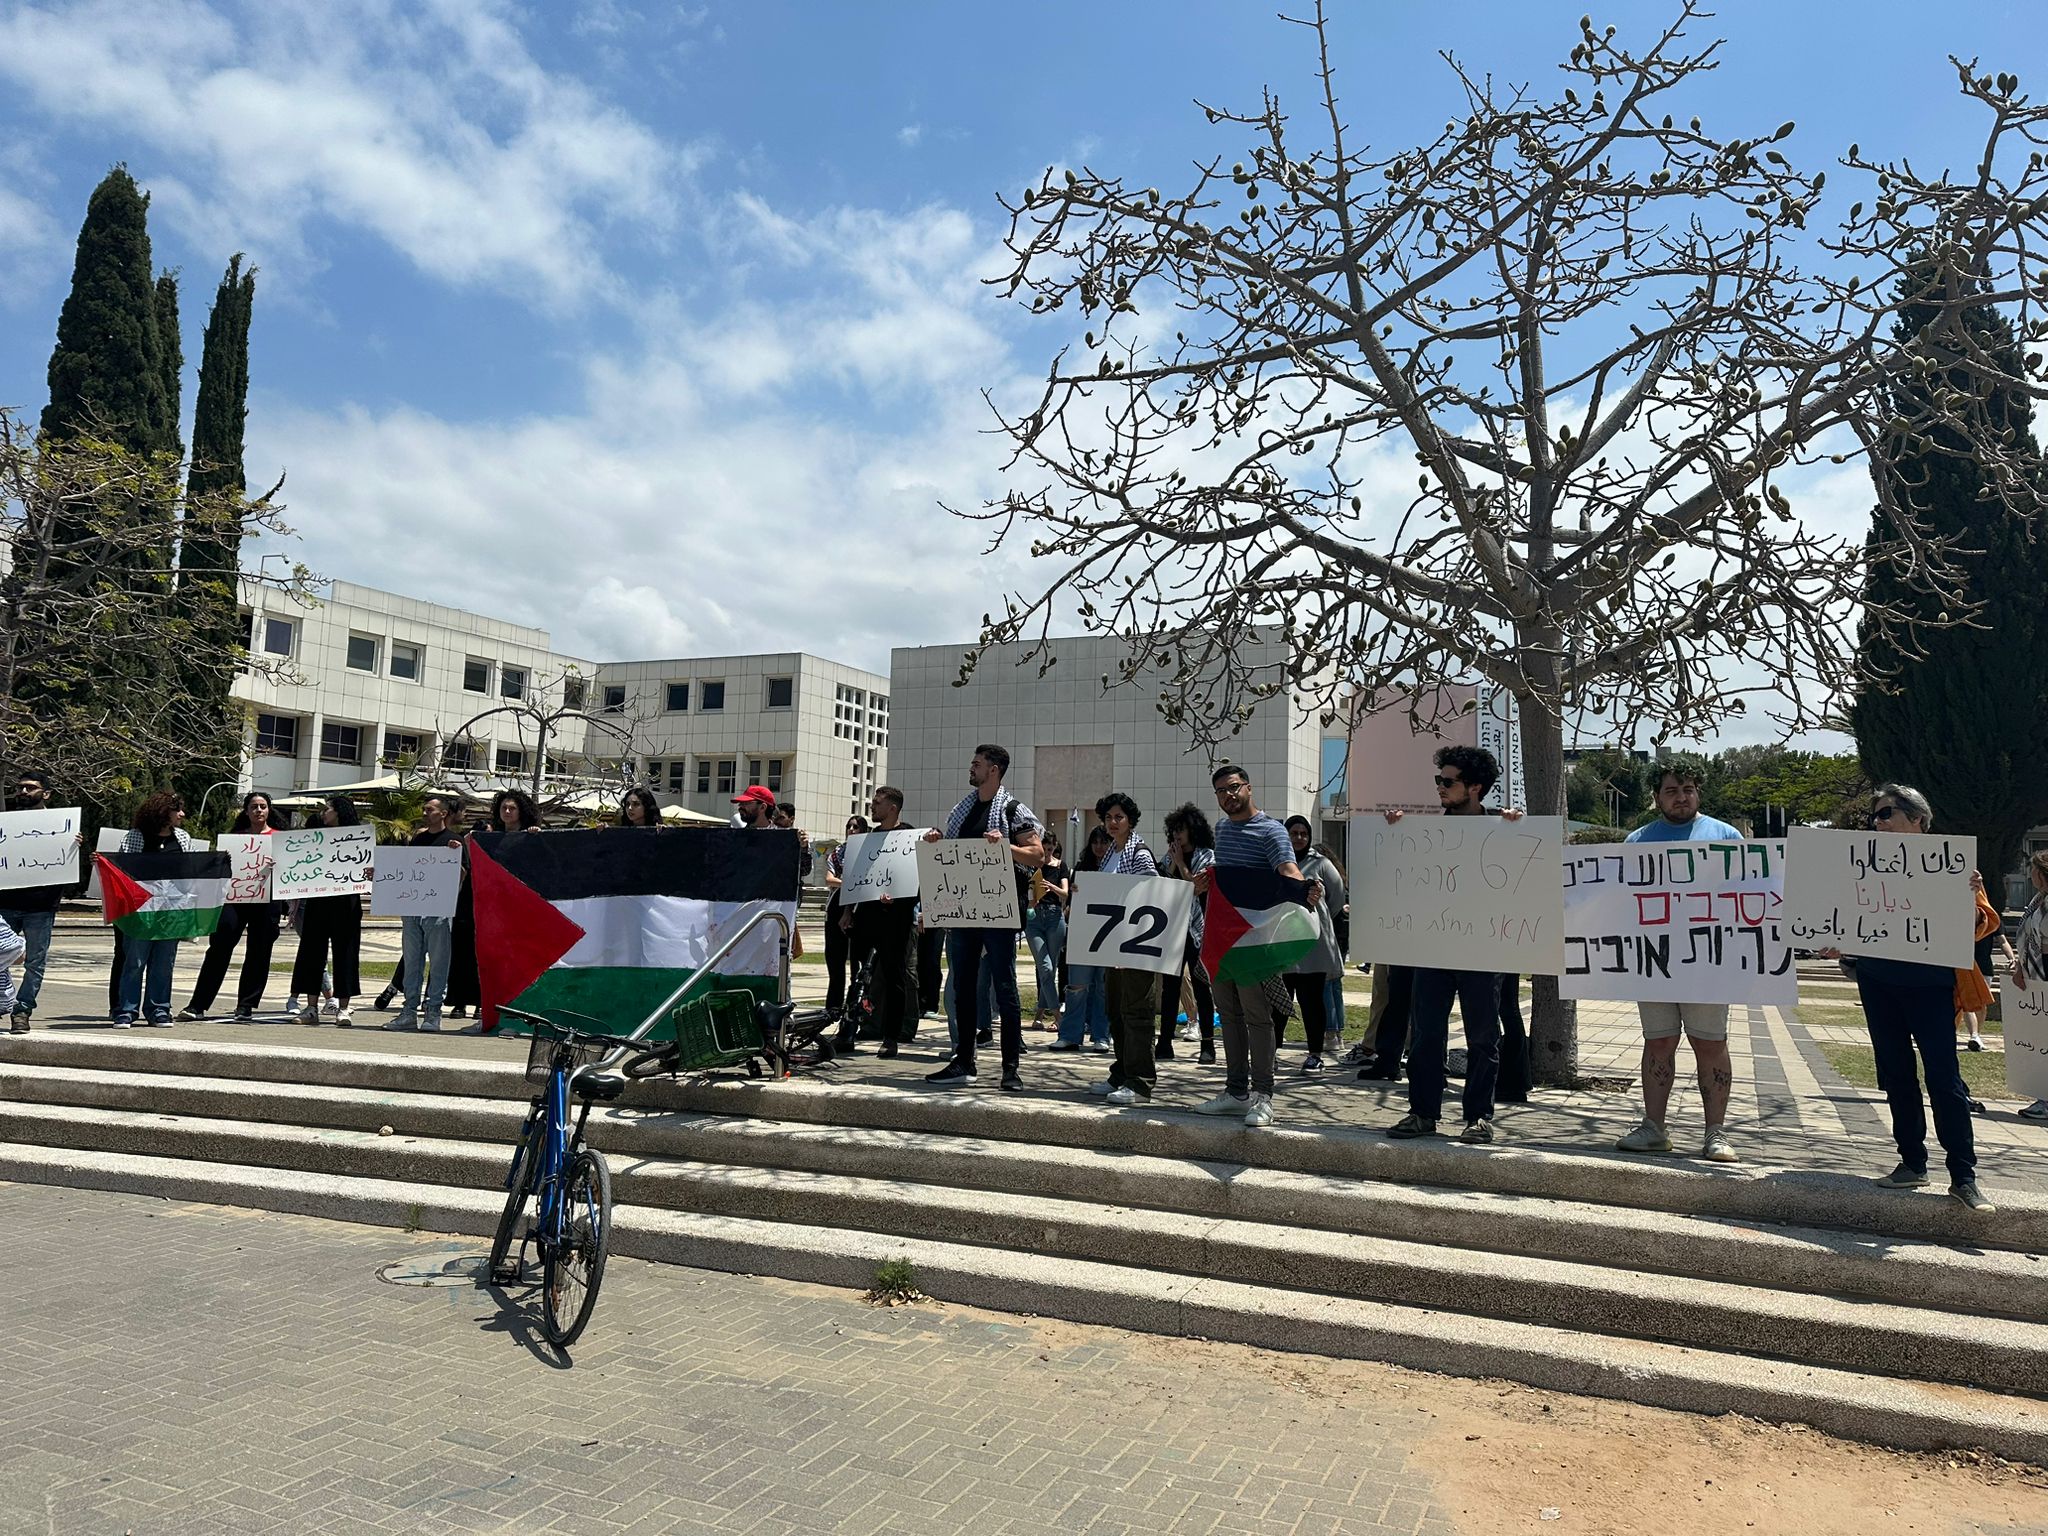  وقفة احتجاجية في جامعة تل أبيب ضد الجريمة وتواطؤ الشرطة